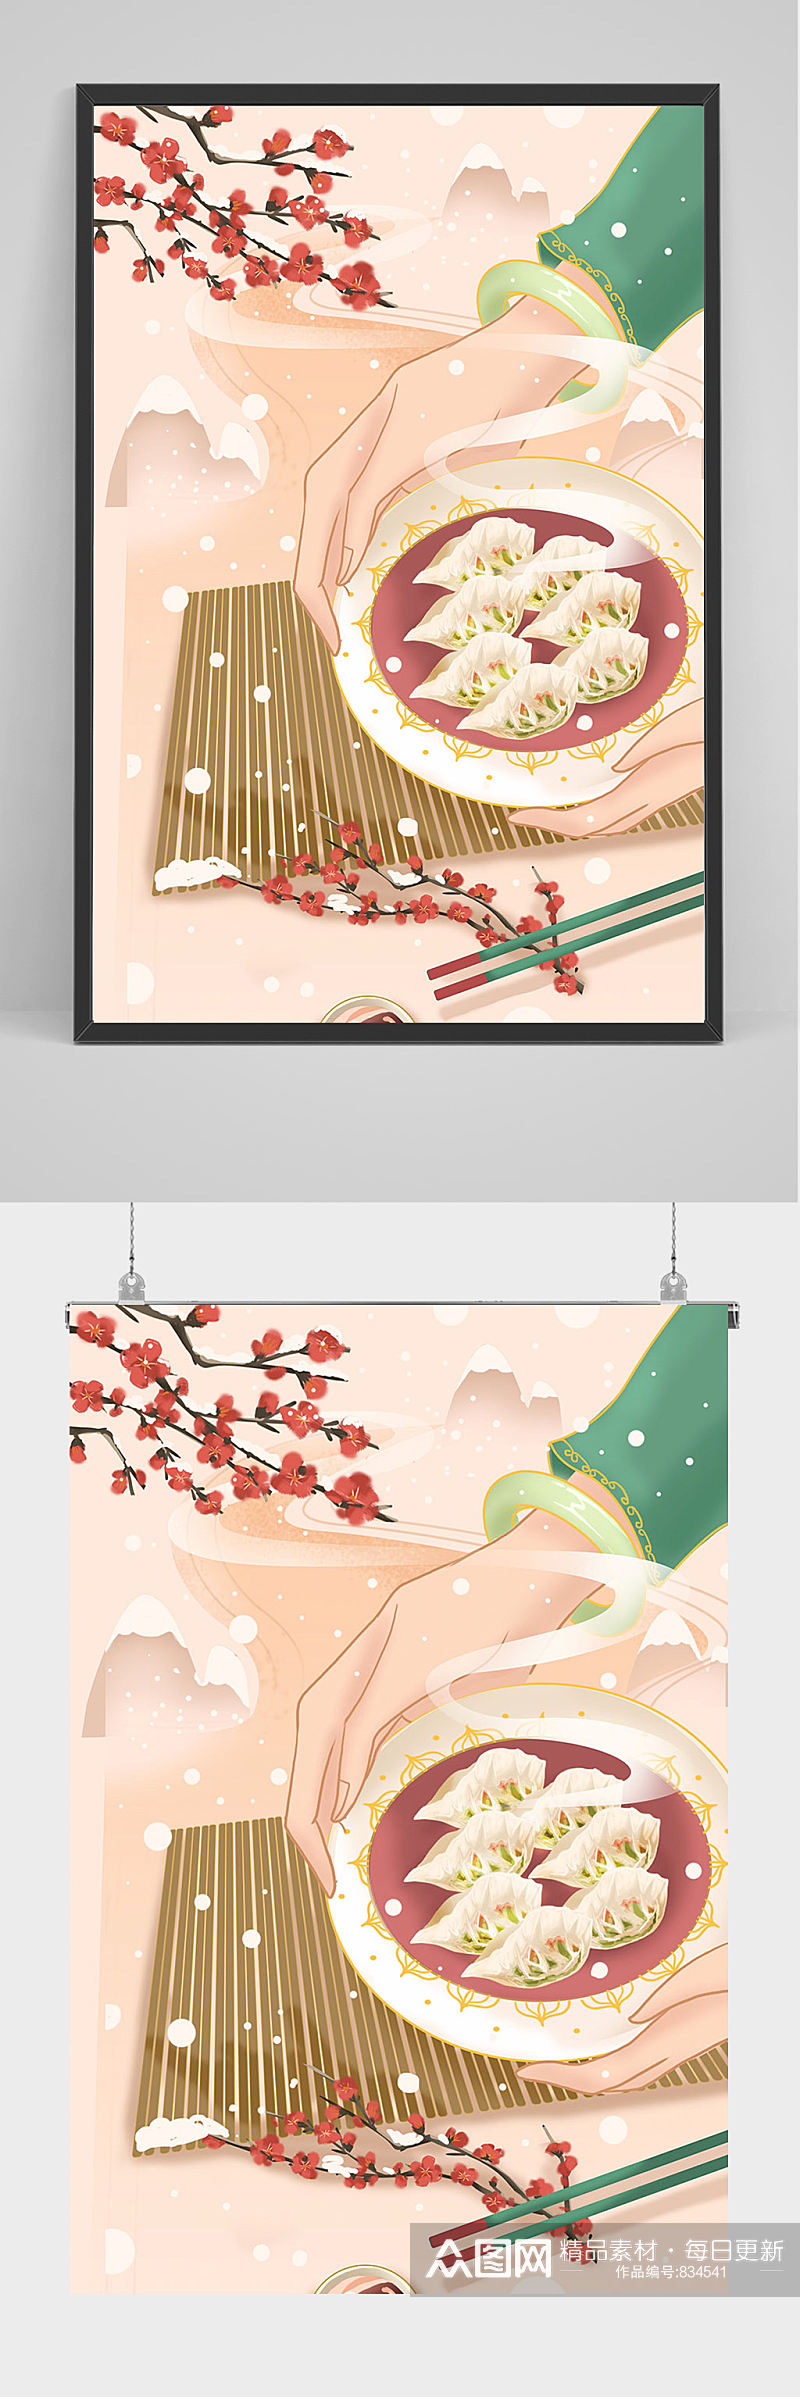 冬至饺子手绘插画设计素材